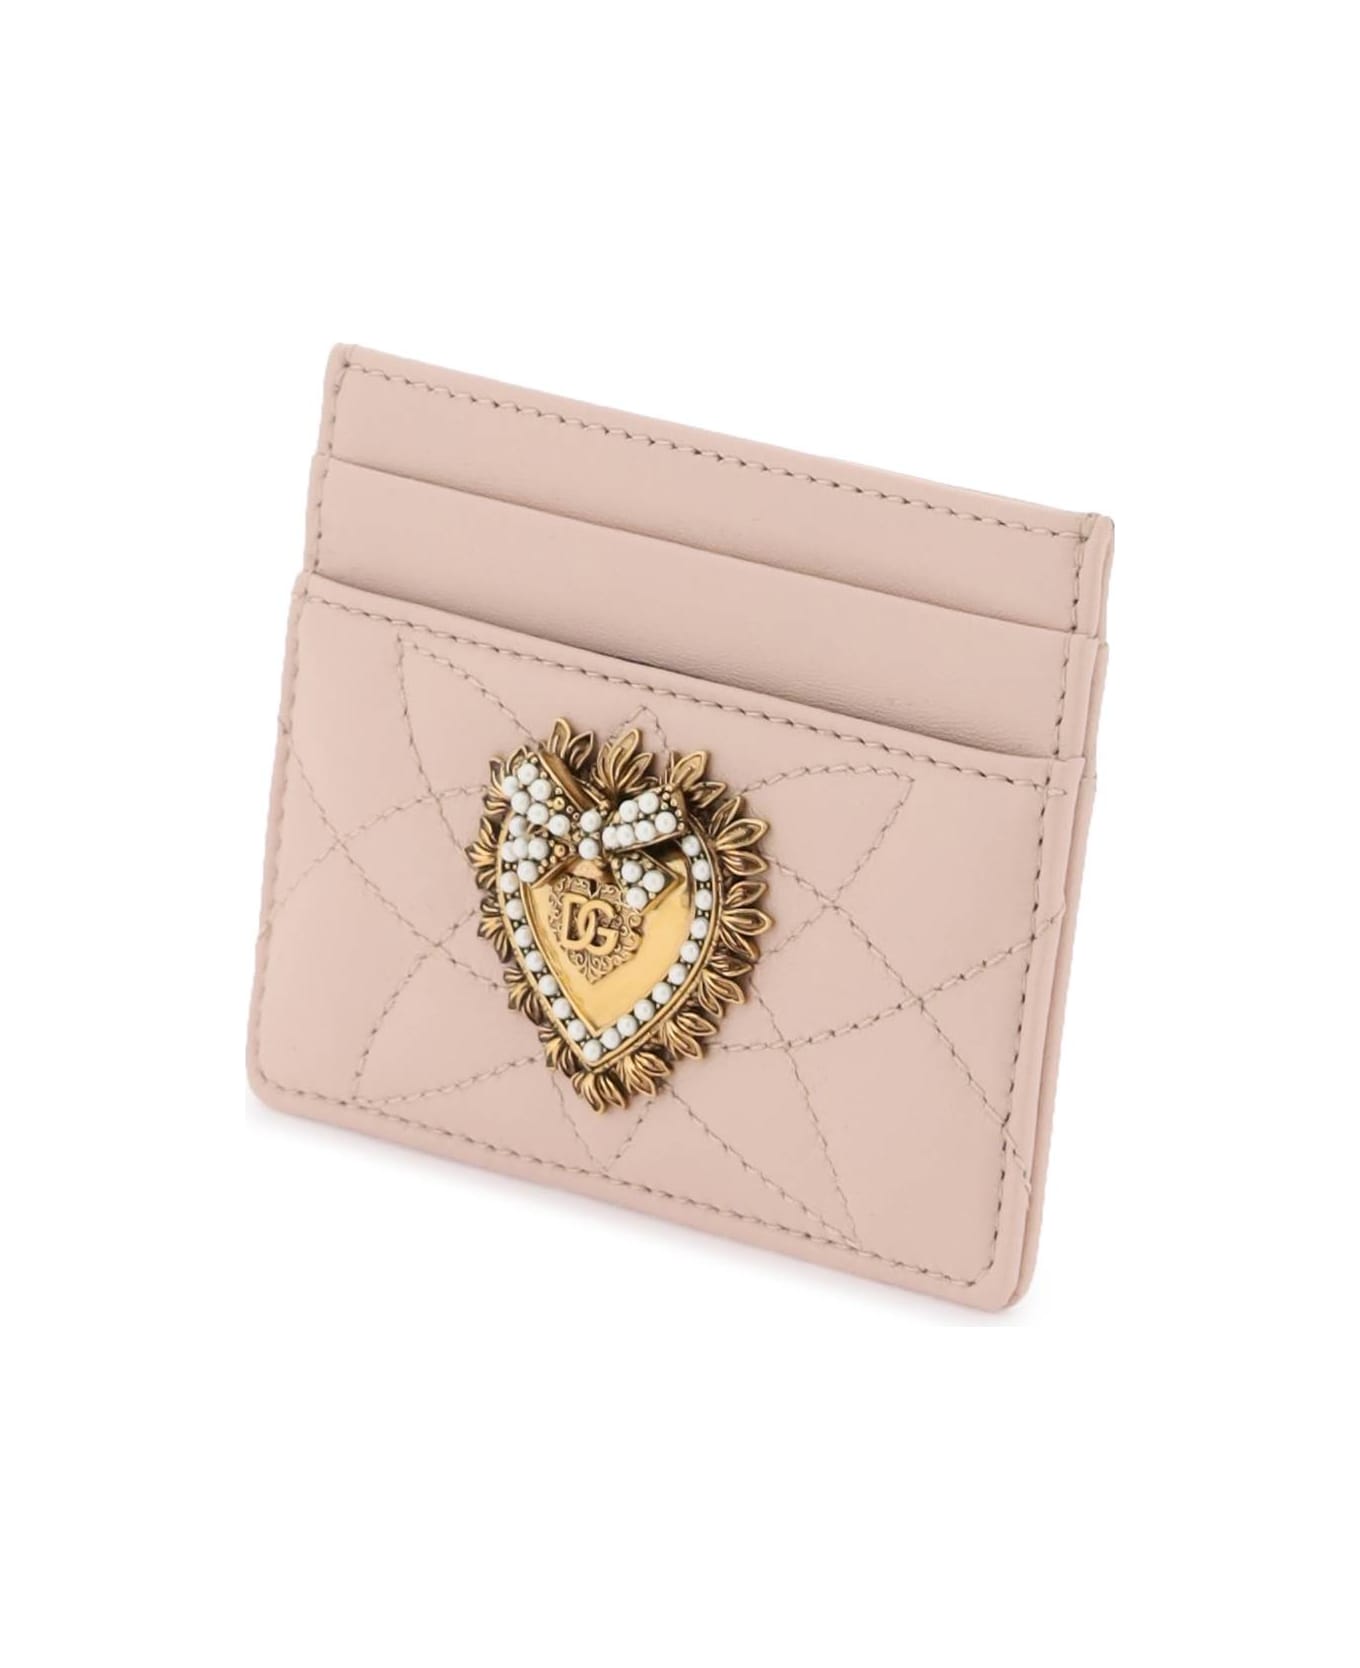 Dolce & Gabbana Devotion Cardholder - CIPRIA 1 (Pink)